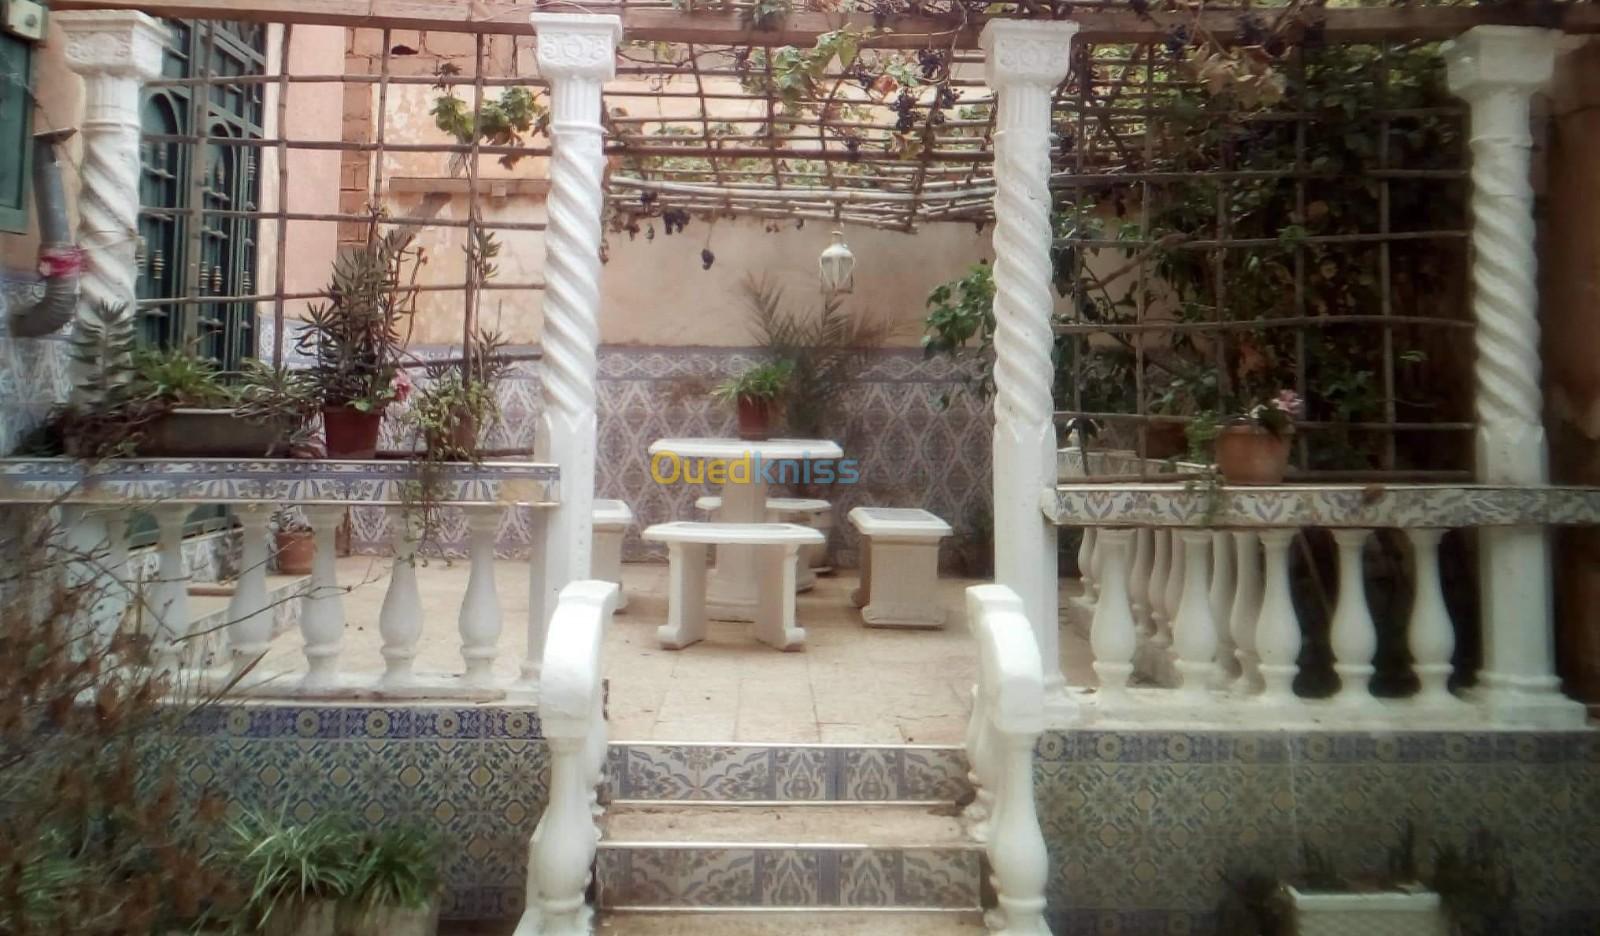 Vente Villa Laghouat Laghouat